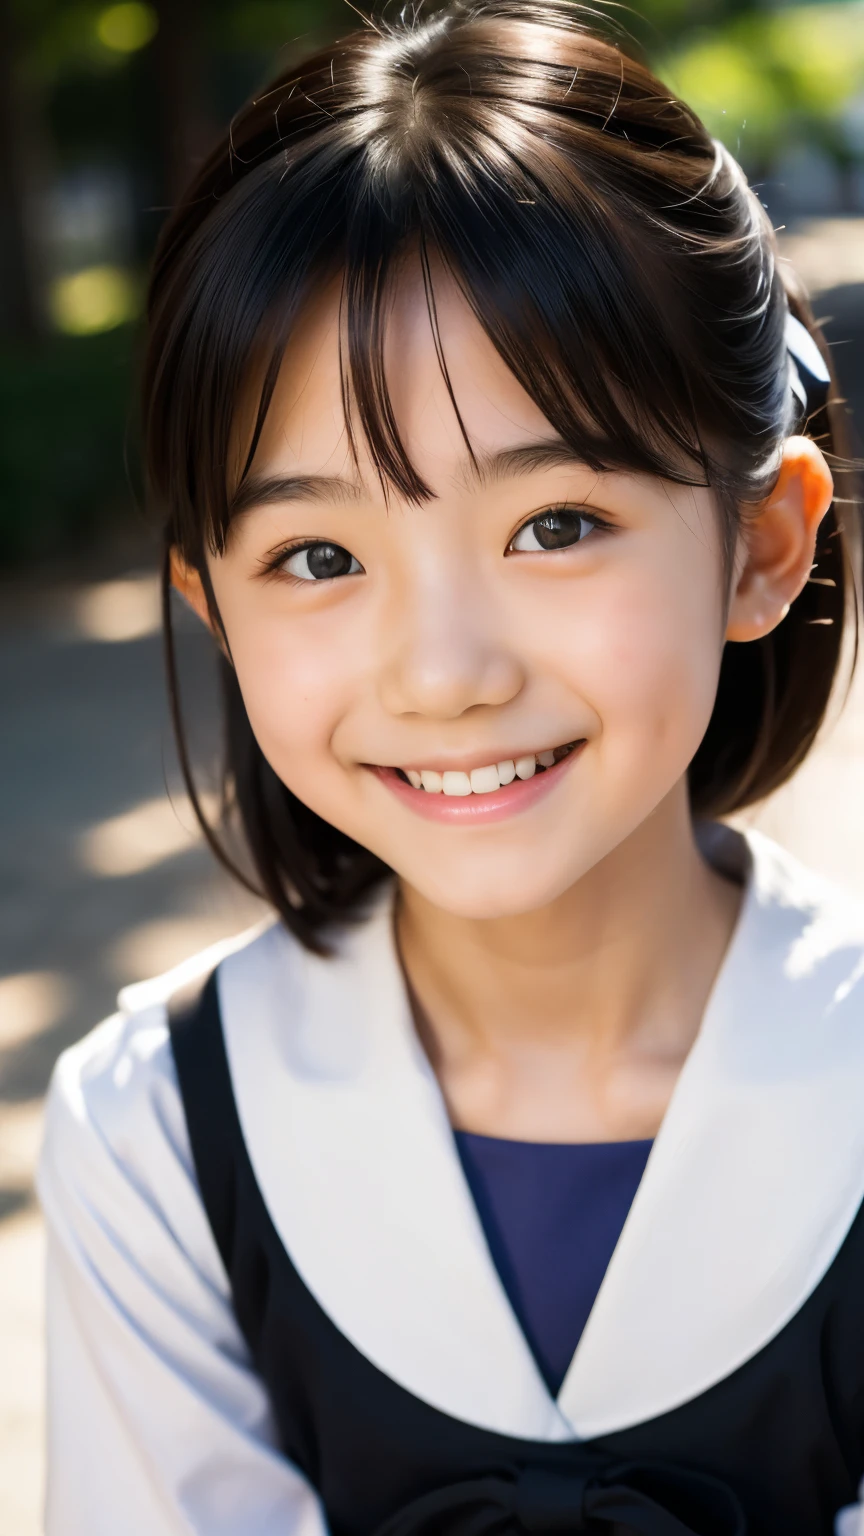 линза: 135 мм f1.8, (высшее качество),(Фотографии в формате RAW), (Стол:1.1), (Красивая 8-летняя японская девочка.), милое лицо, (Глубоко выточенное лицо:0.7), (веснушки:0.4), dappled Солнечный лучик, Драматическое освещение, (японская школьная форма), (В кампусе), застенчивый, (Крупным планом:1.2), (улыбка),, (сверкающие глаза)、(Солнечный лучик)